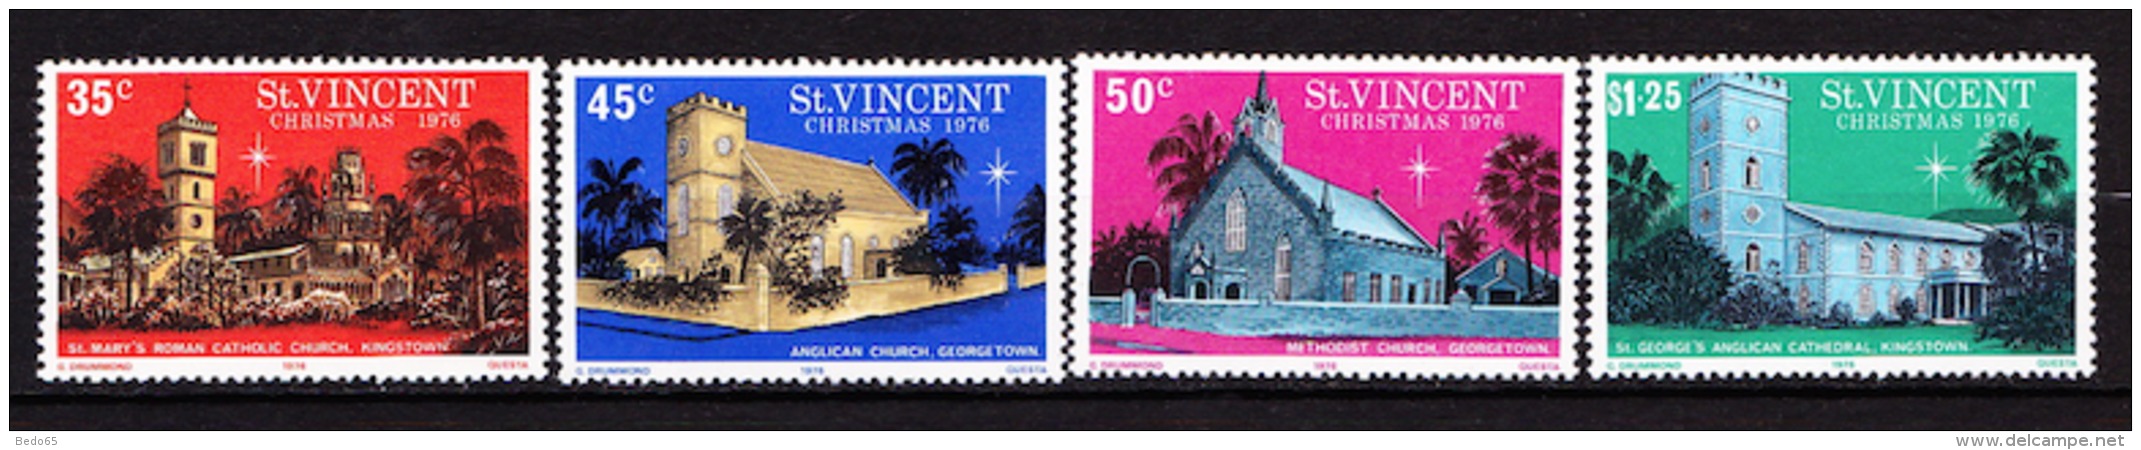 ST.VINCENT N° 454 / 455 / 456 / 457   NEUF** TTB  SANS TRACE DE CHARNIERE - St.Vincent (...-1979)